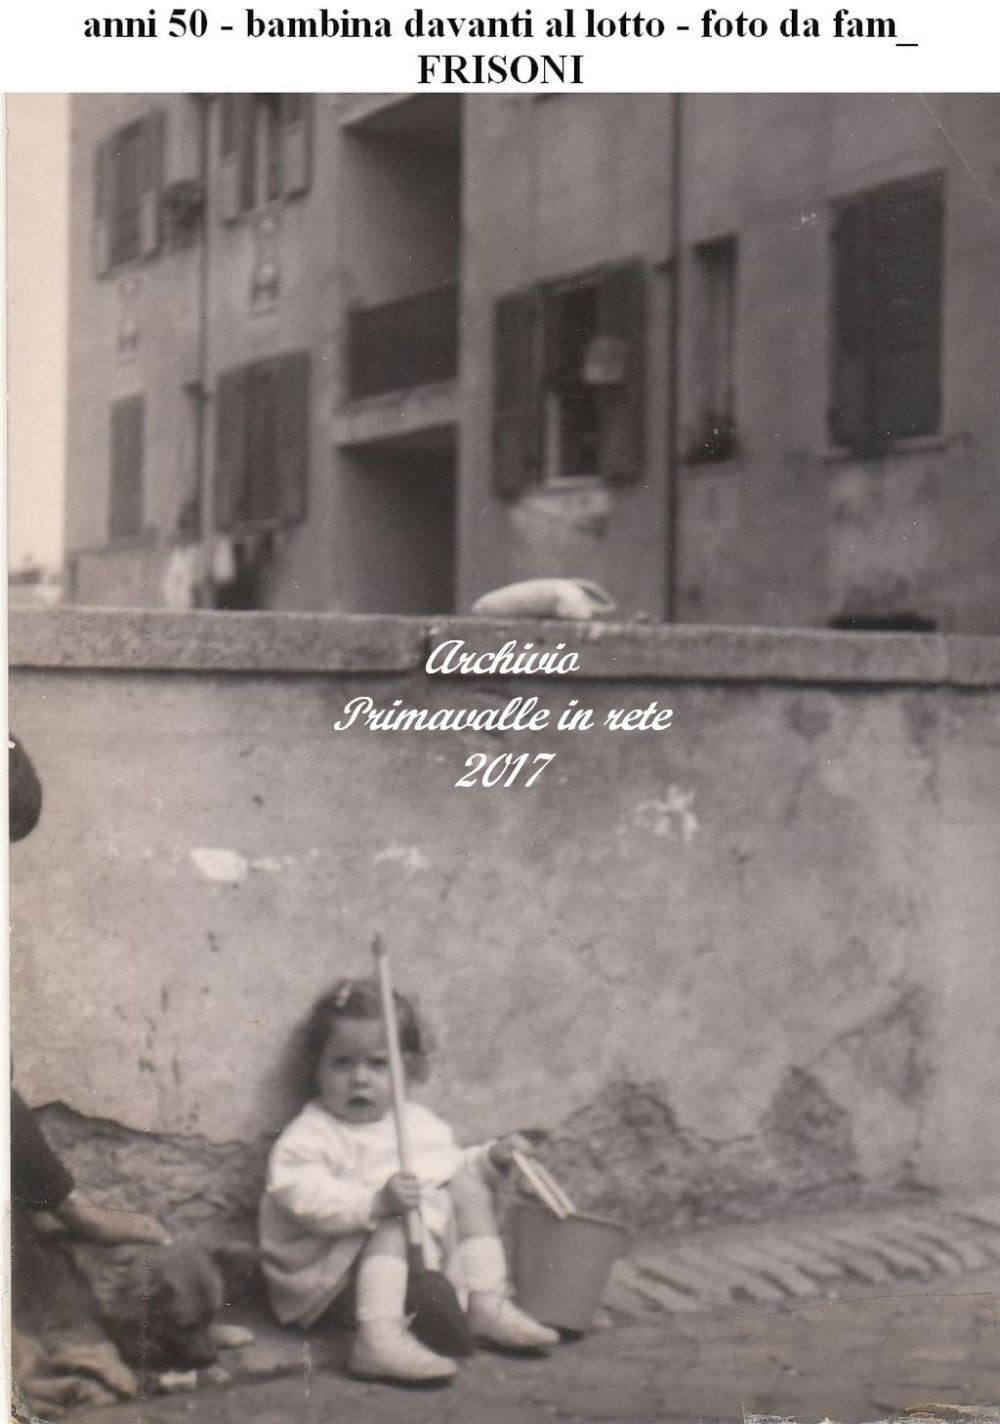 anni 50 - bambina davanti al lotto - foto da fam_ FRISONI